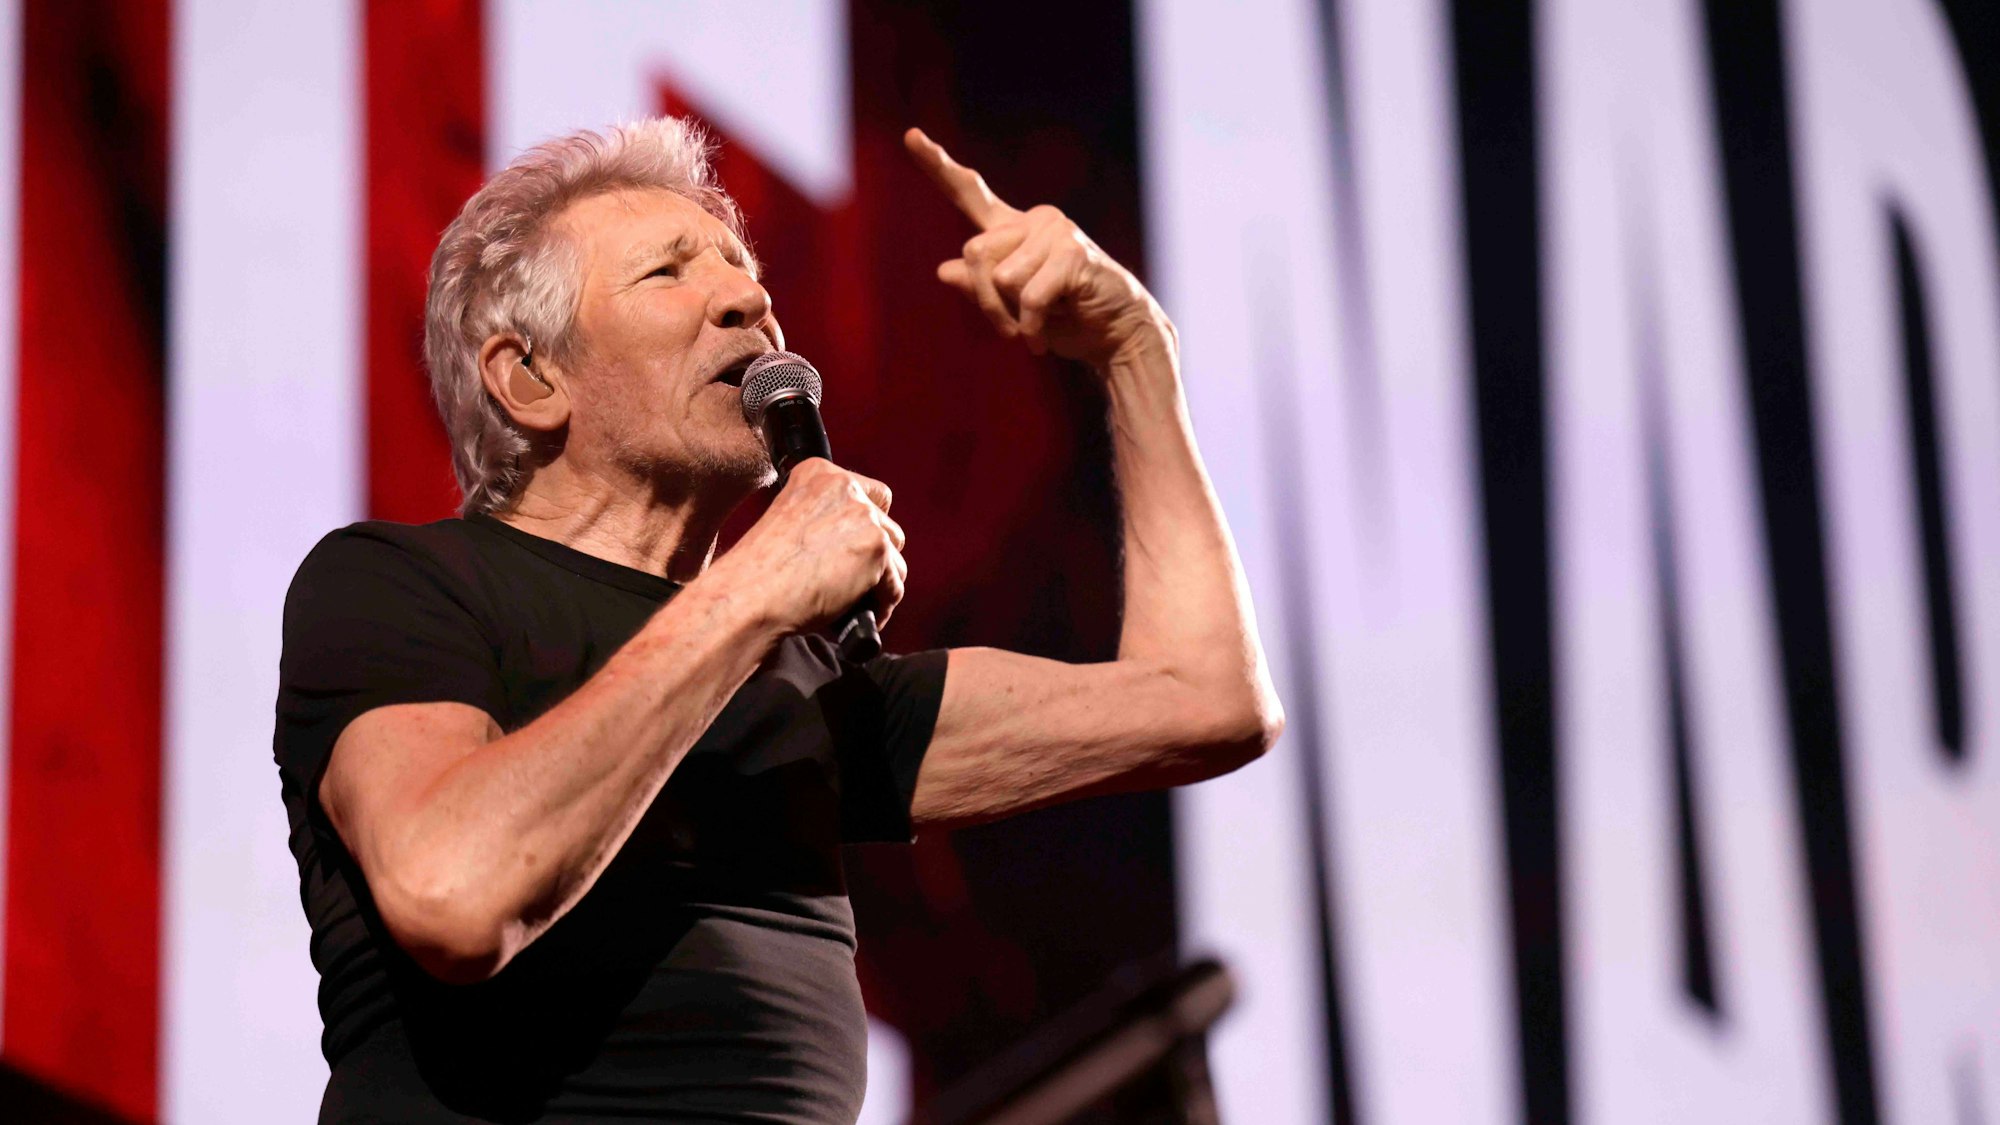 Roger Waters (* 6. September 1943 in Great Bookham, Großbritannien, Britischer Musiker und Ex-Pink Floyd-Sänger) gastiert mit Werken von Pink Floyd auf seiner „This Is Not A Drill“-Abschiedstour.